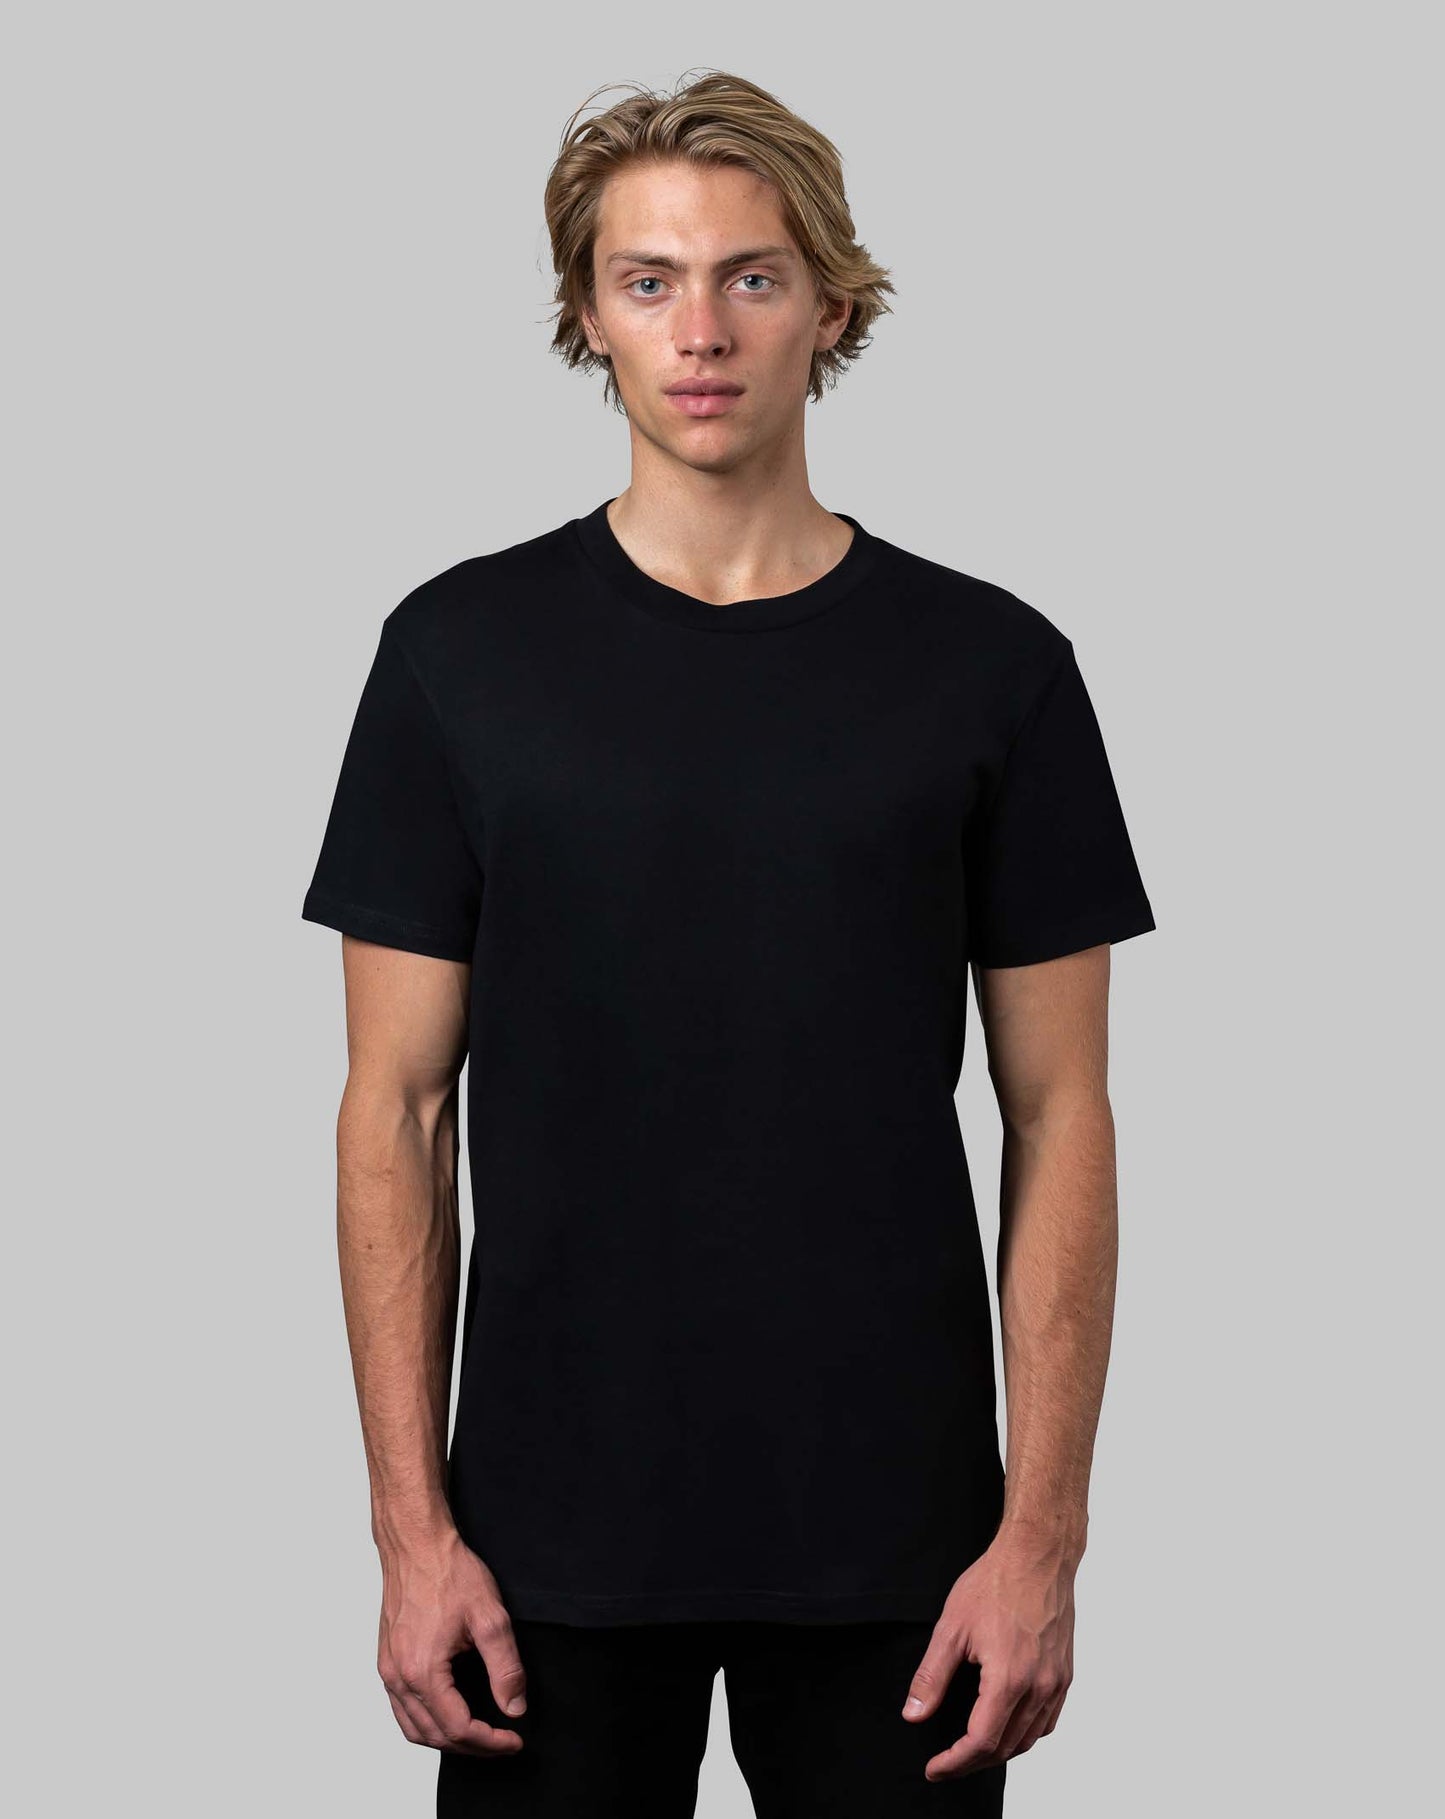 top, black, tee, t-shirt, shirts, 